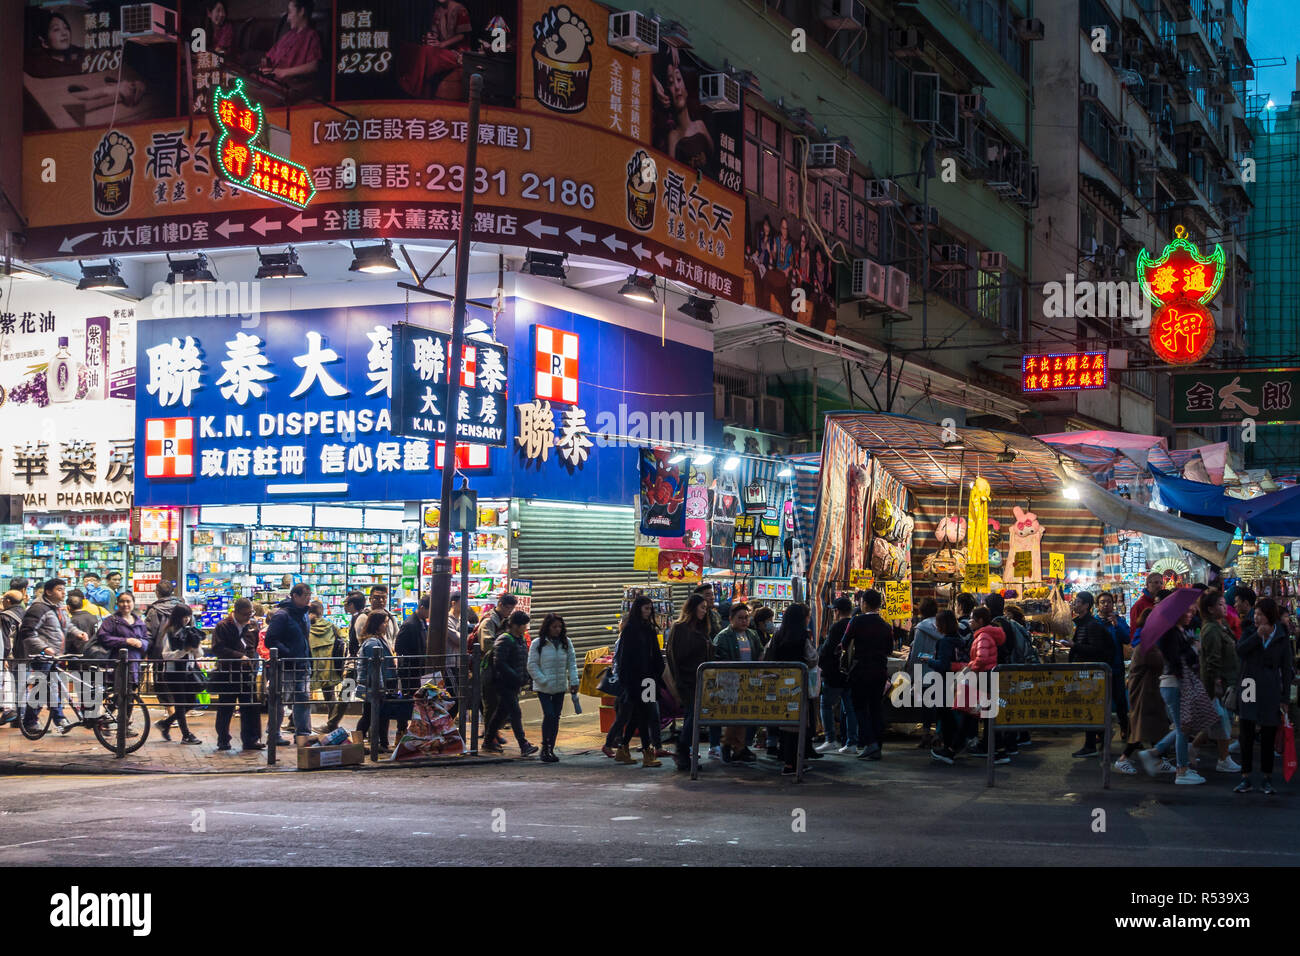 Nathan Road in Mong Kok area a tardo pomeriggio, piena di gente, venditori ambulanti e neon-illuminate dei negozi. Di Hong Kong, Kowloon, Gennaio 2018 Foto Stock